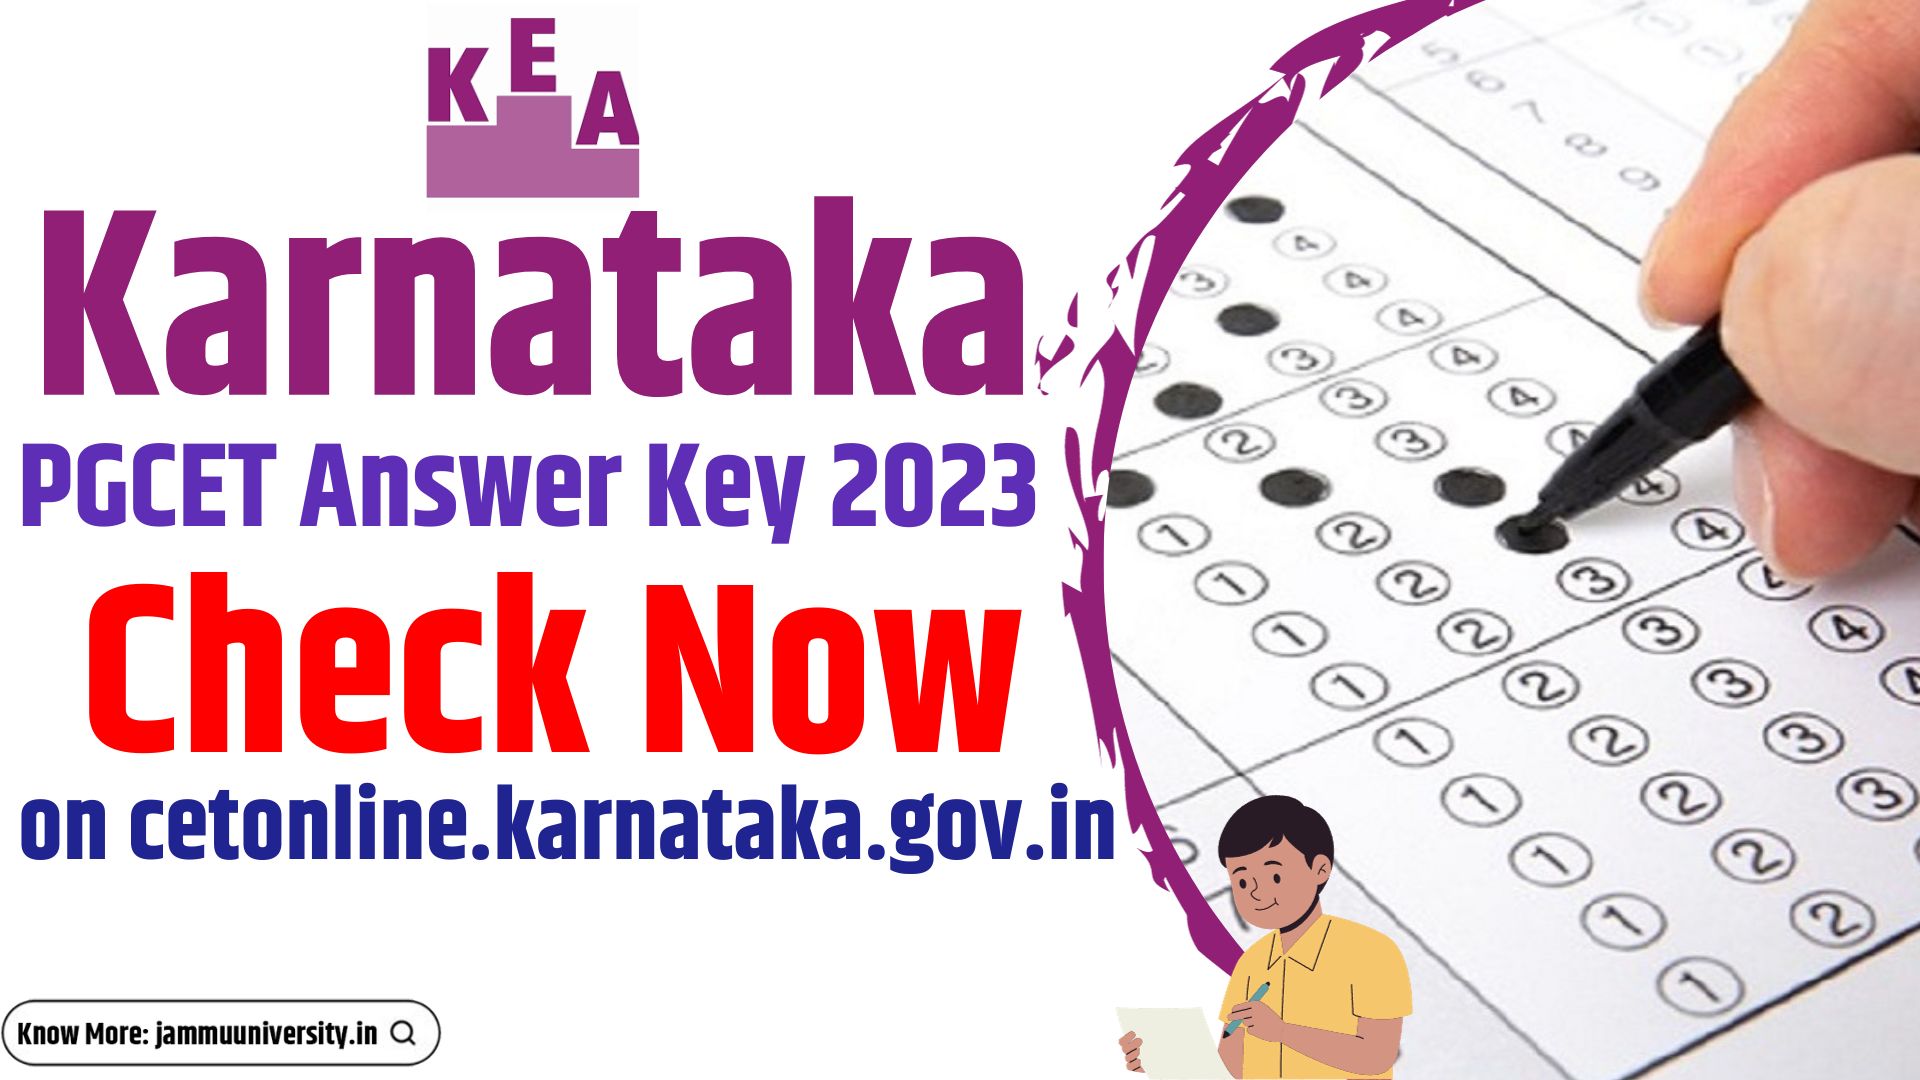 Karnataka PGCET Answer Key 2023